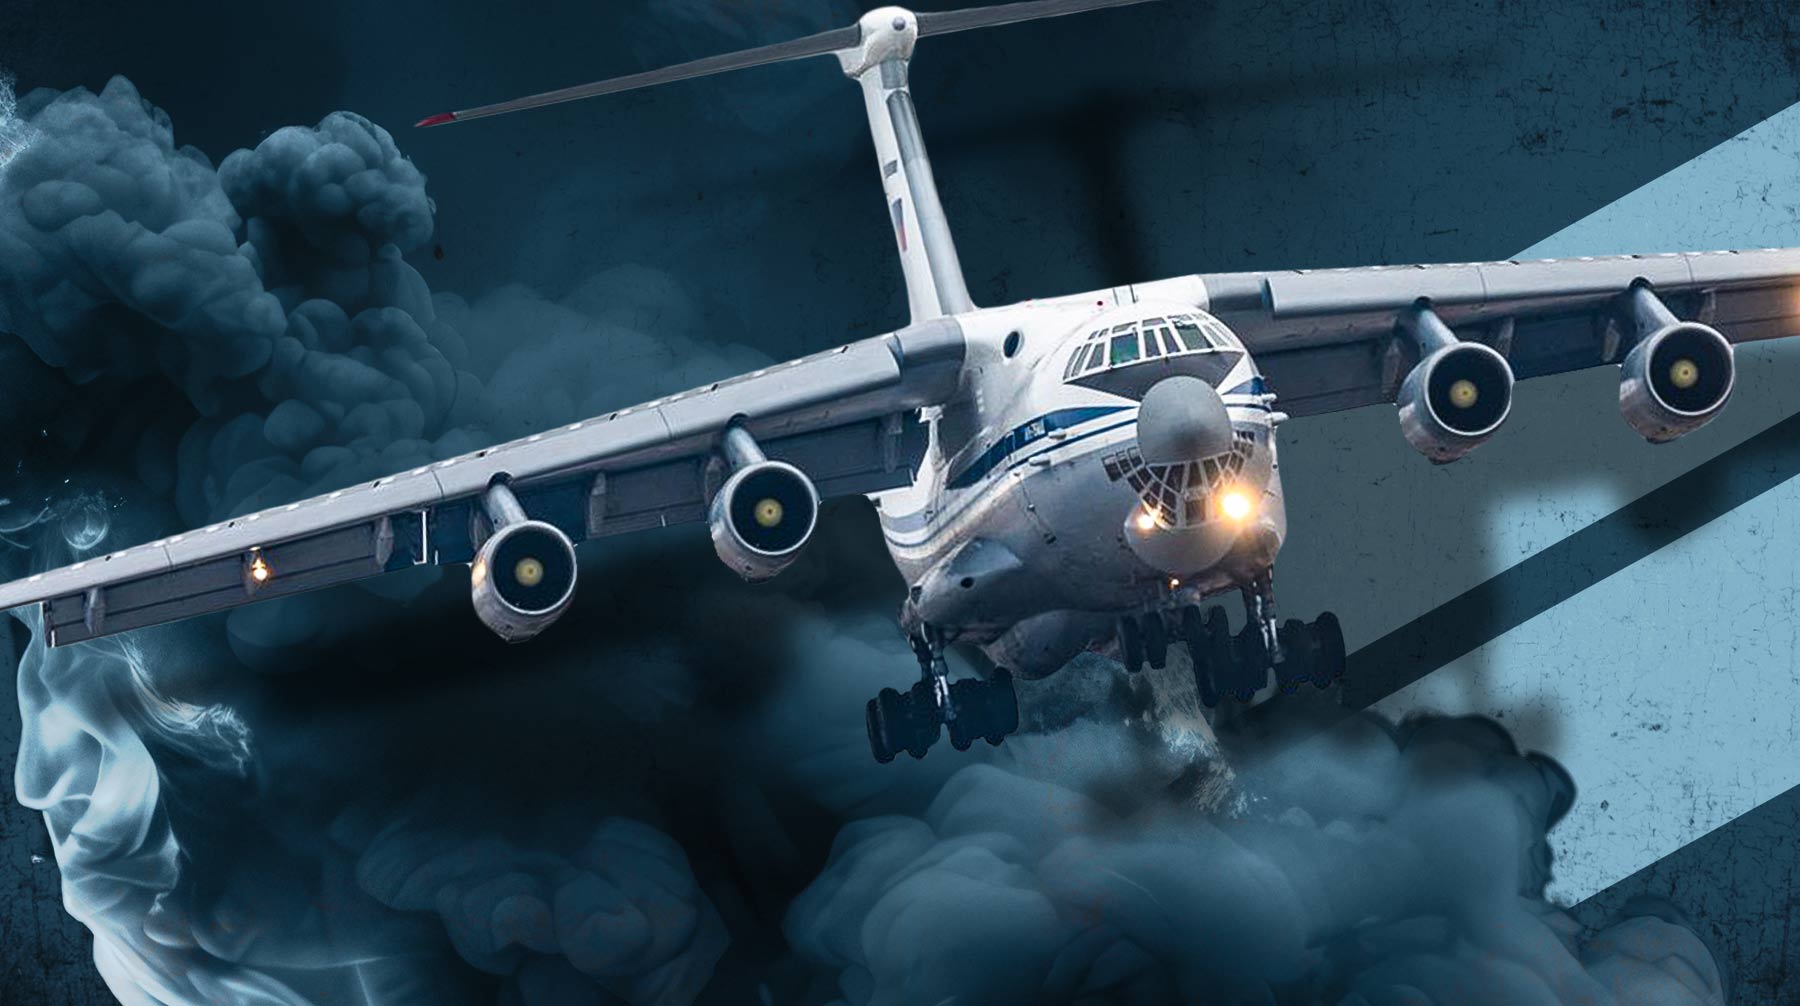 Погибший экипаж могут представить к наградам за то, что отвели Ил-76 от населенных пунктов и гражданское население не пострадало Коллаж: Daily Storm